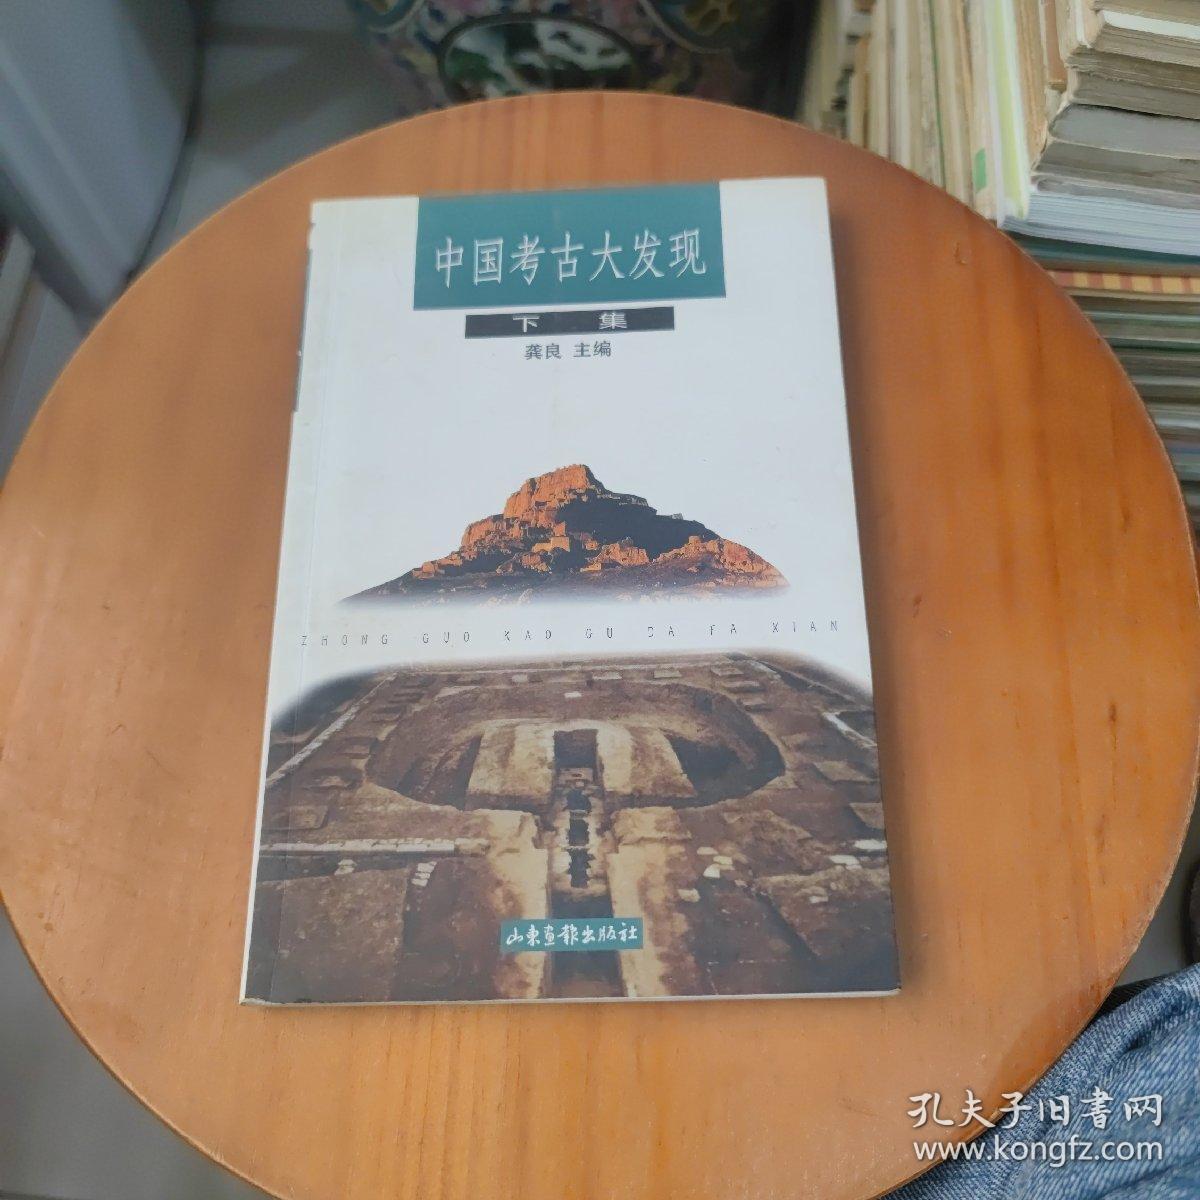 中国考古大发现